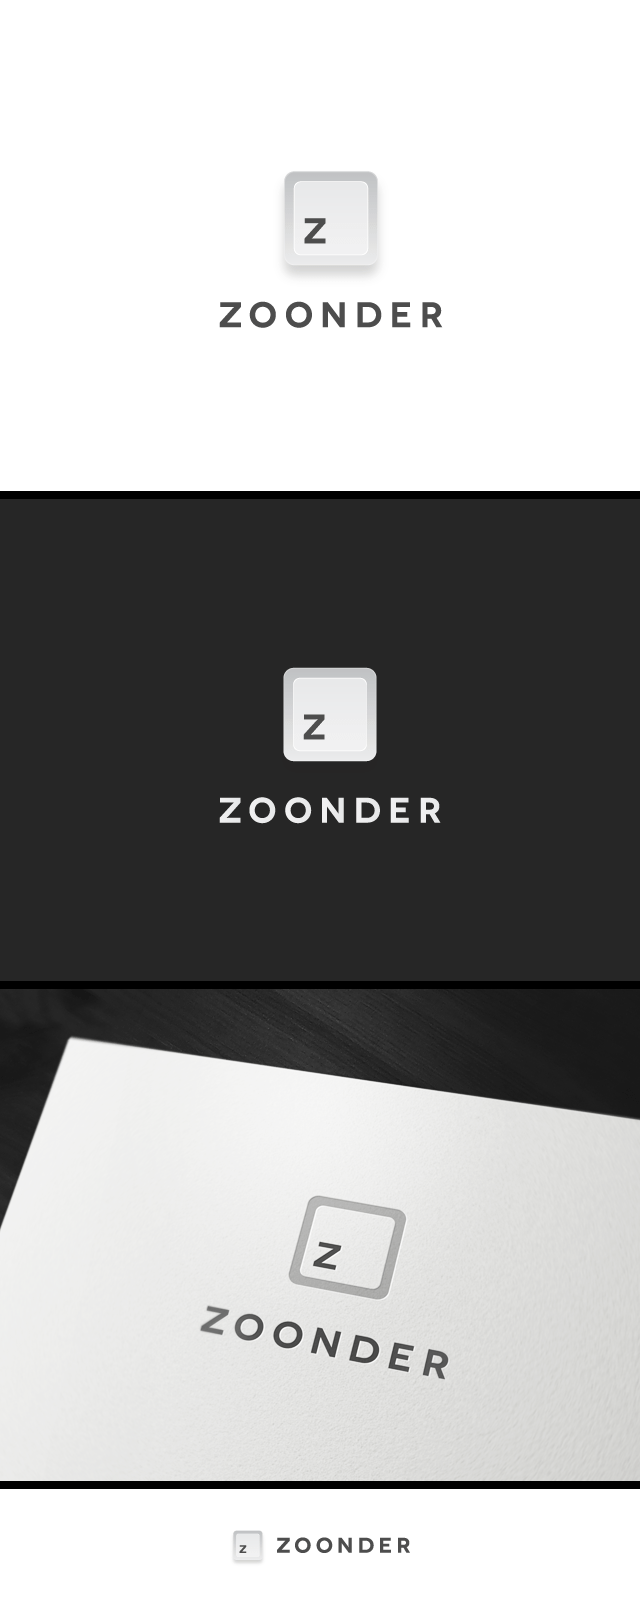 eximdesign_zoonder_2.png